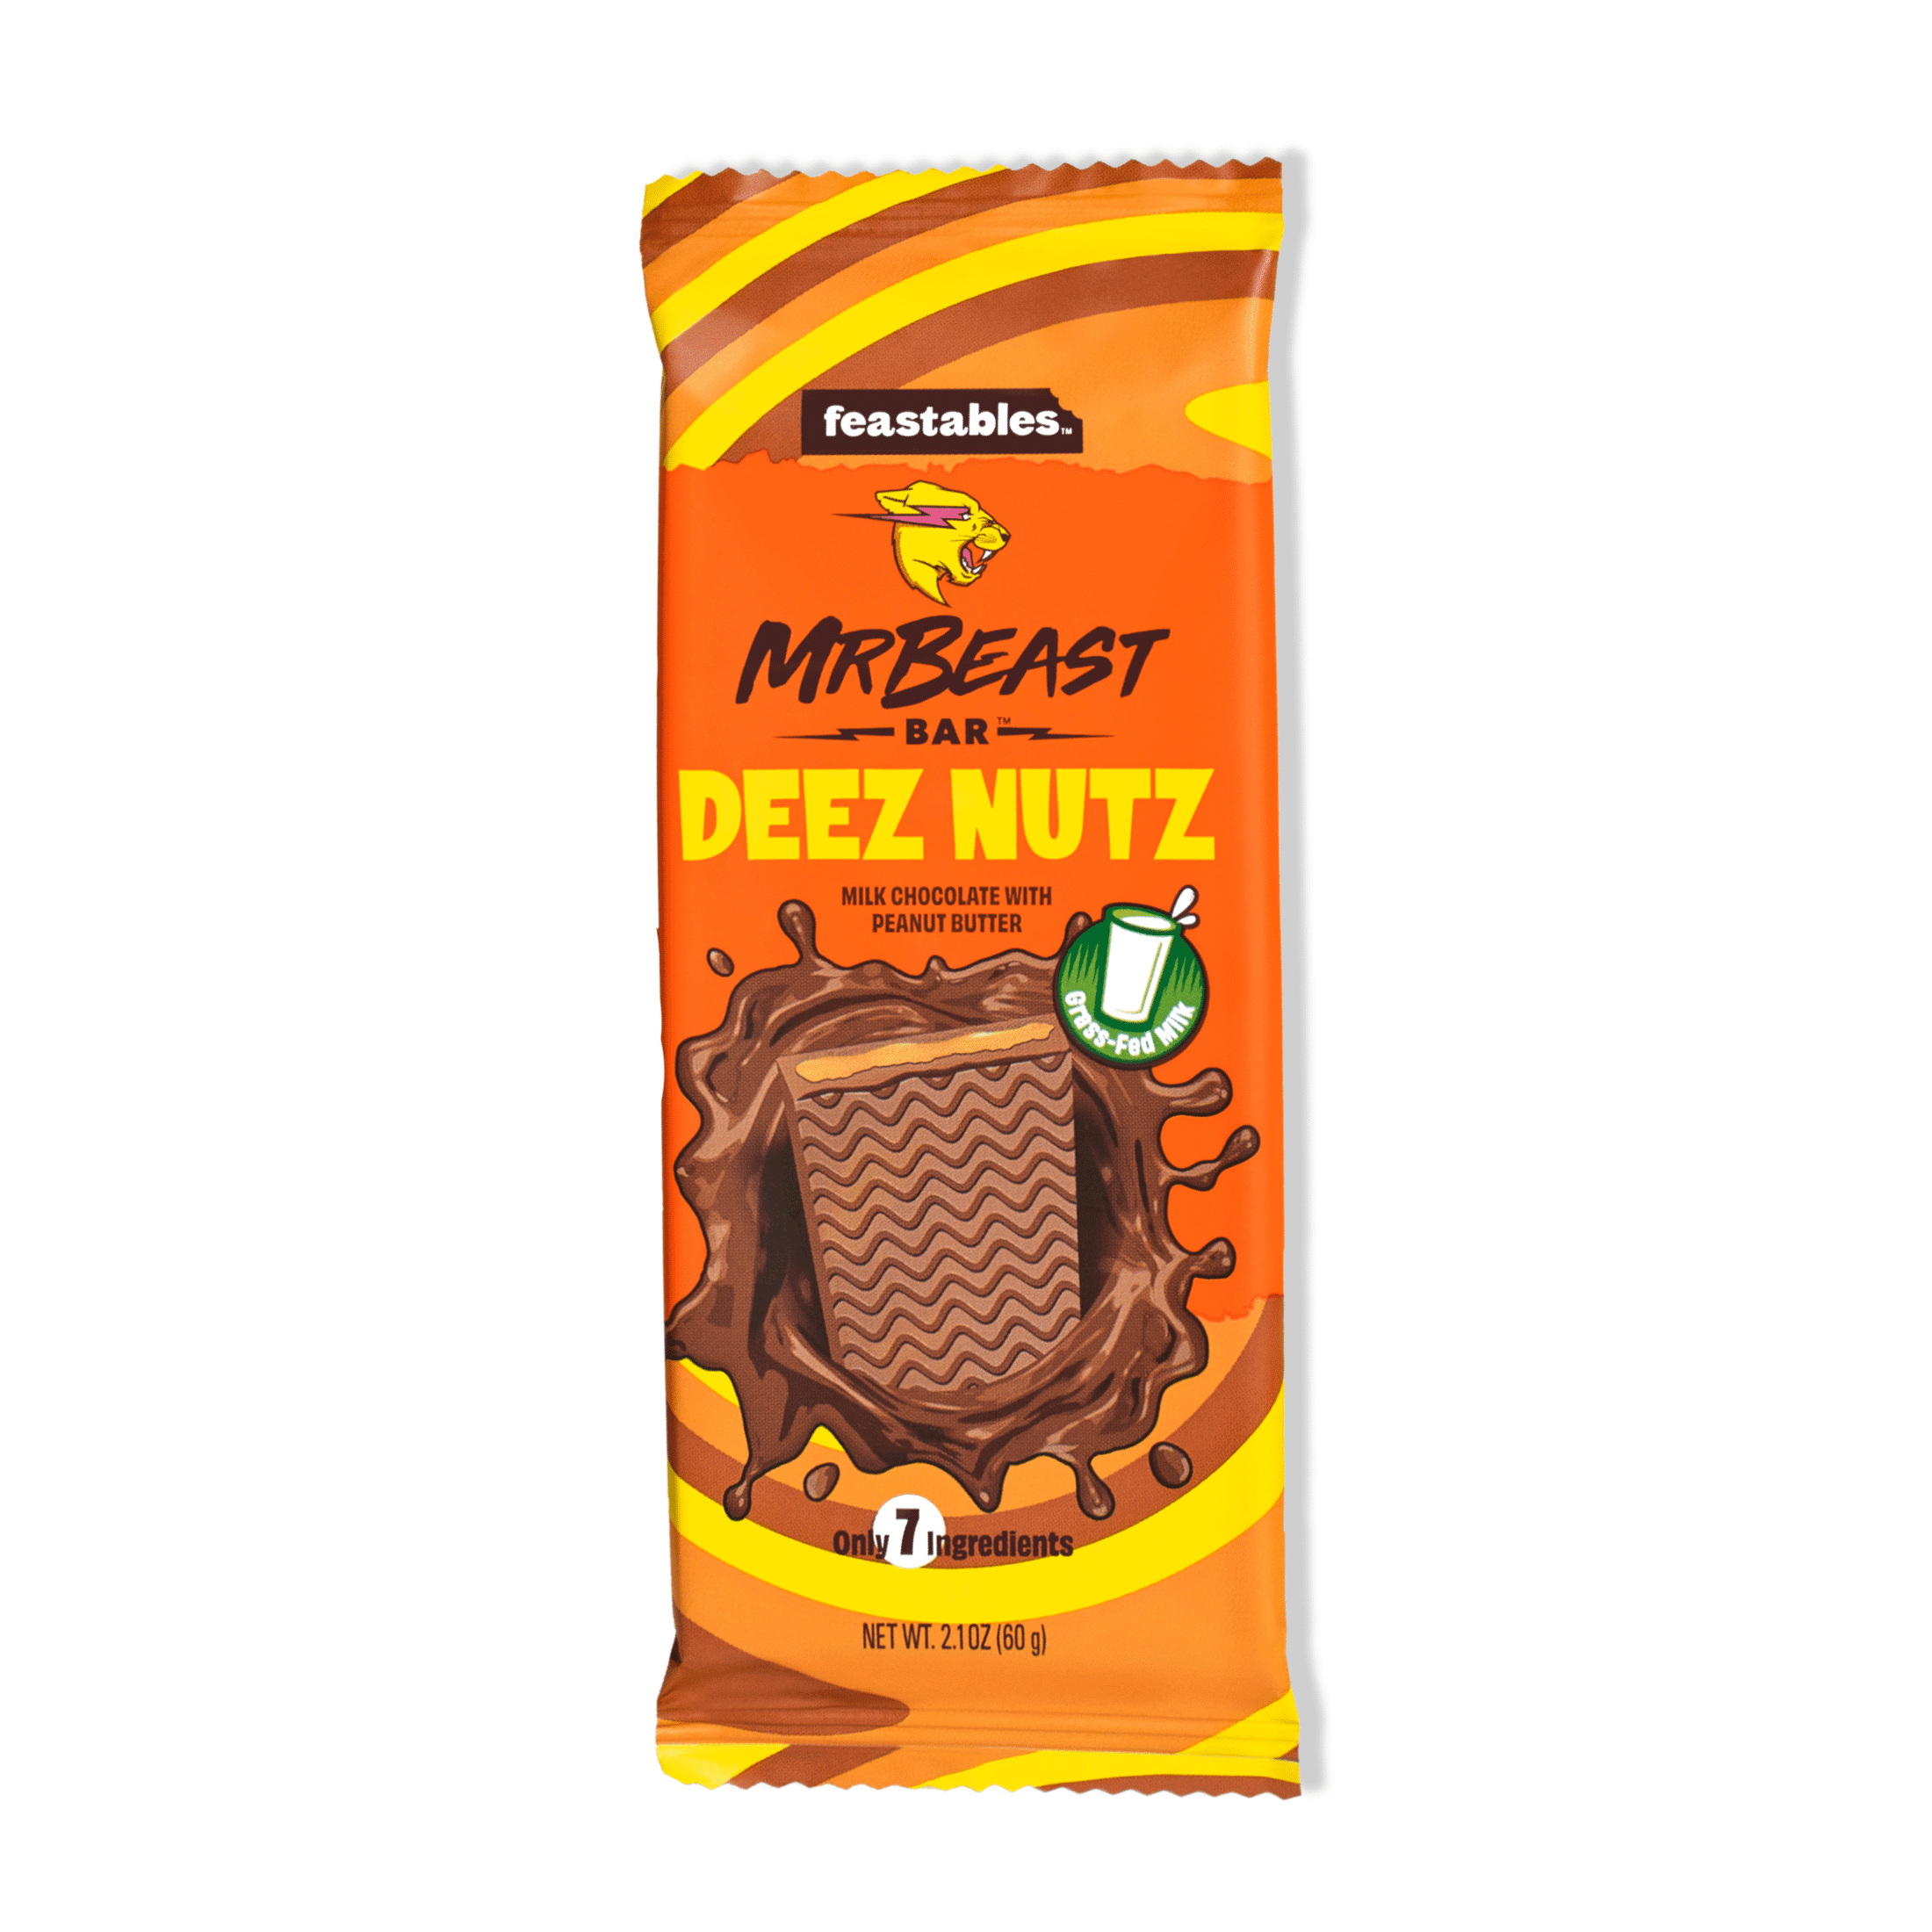 Feastables MrBeast Deez Nutz Peanut Butter Milk Chocolate Bar 2.1